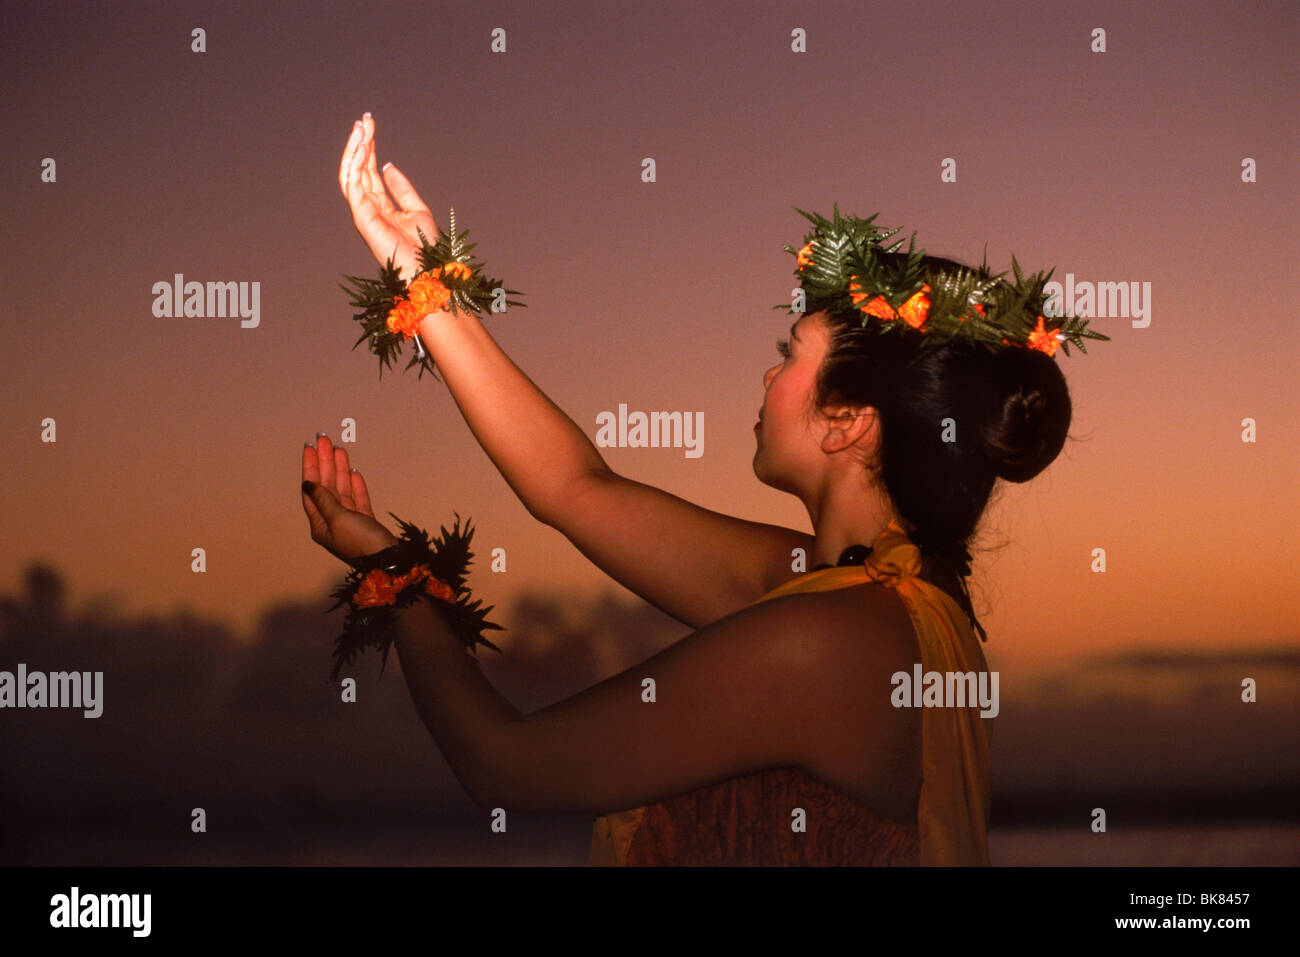 Mains de danseuse de hula hula à Hawaii se découpant au crépuscule Banque D'Images